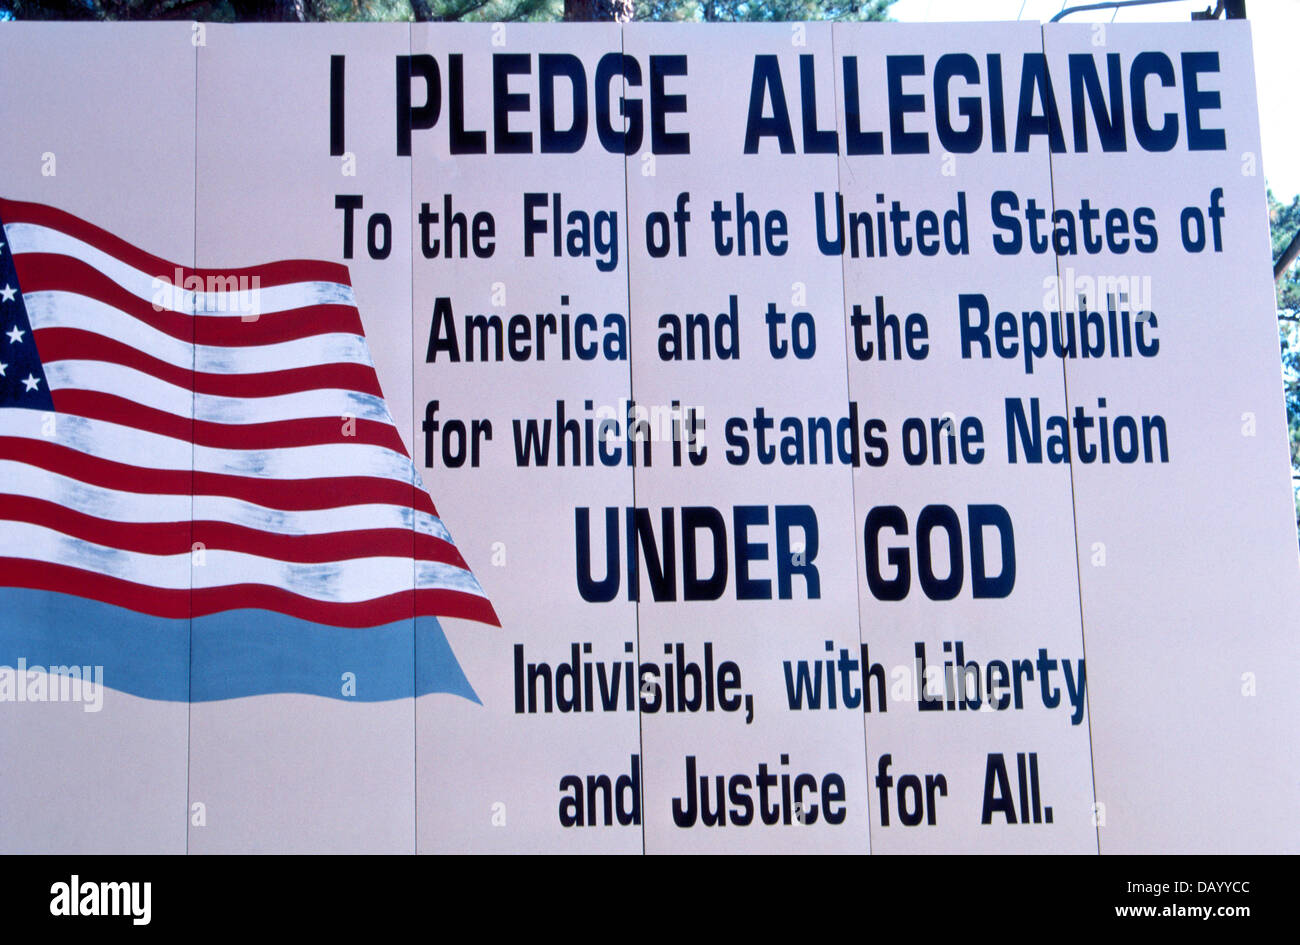 Patriotischen Zeichen mit den Worten, die Vereinigten Staaten von Amerika Pledge of Allegiance erscheinen auf einer outdoor-Plakatwand in Louisiana State, USA. Stockfoto